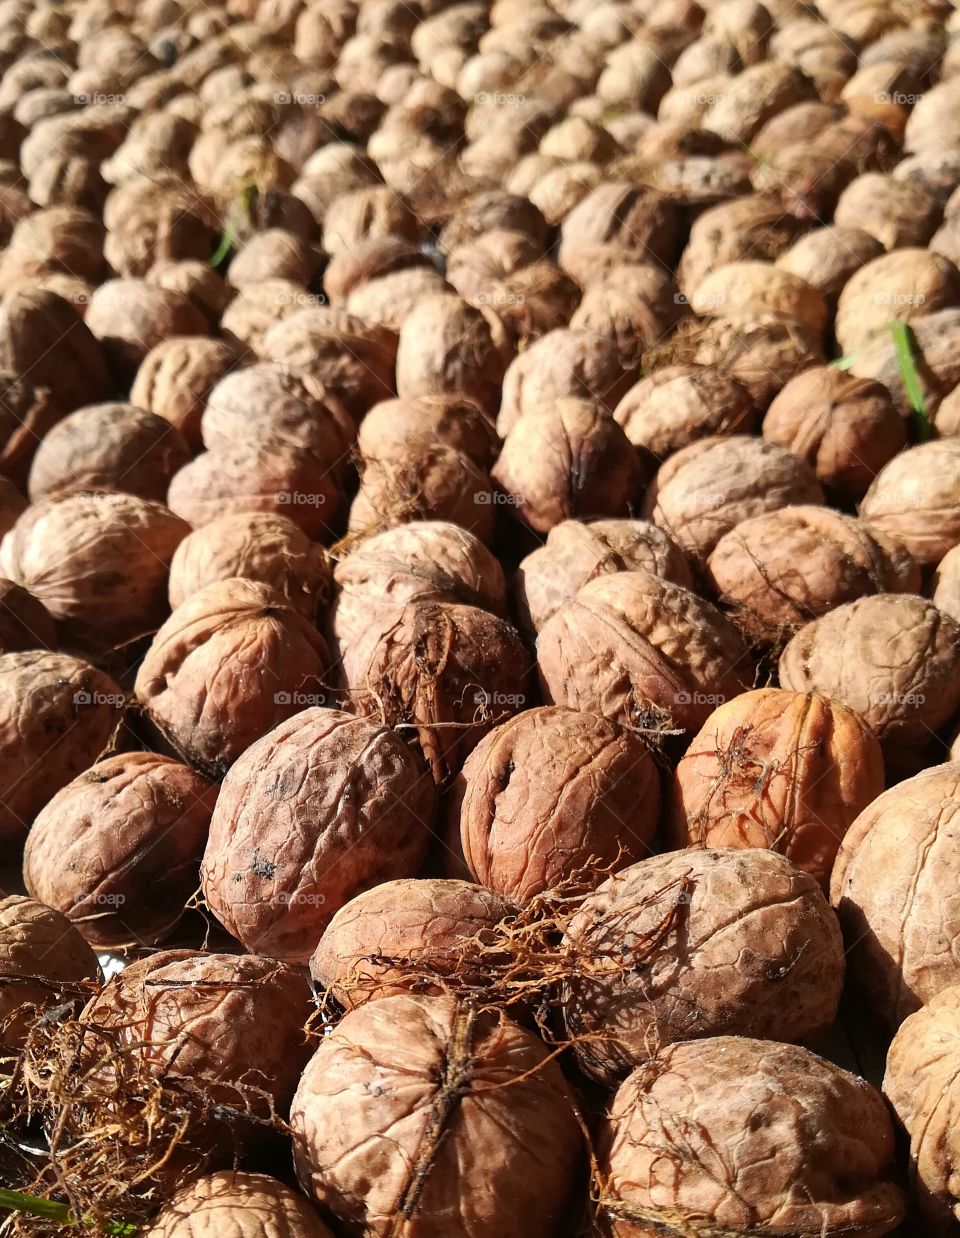 Wolnuts